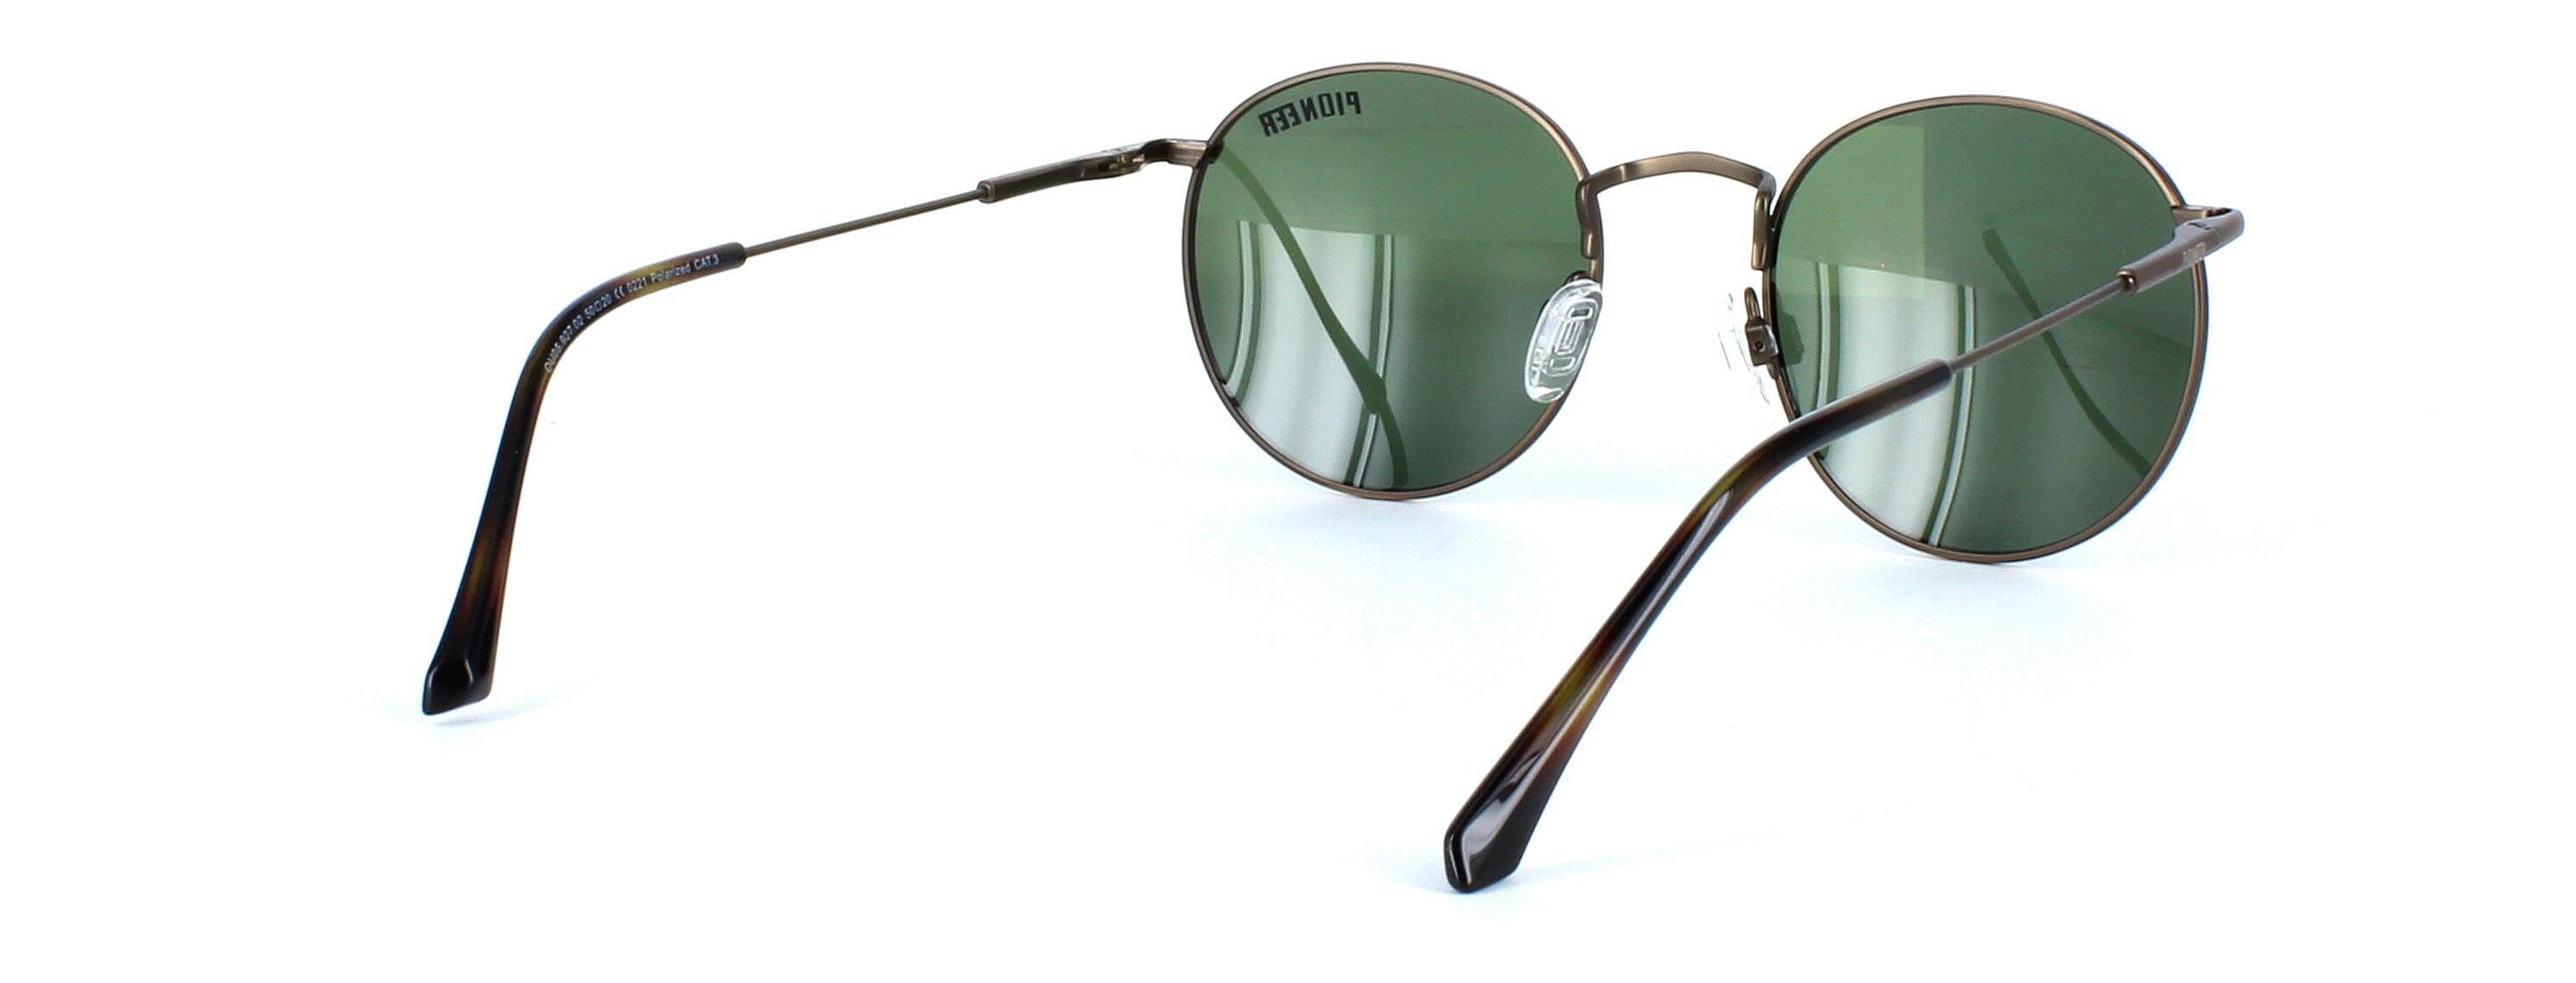 Olmeto - Round shaped pioneer prescription sunglasses - bronze - image view 4